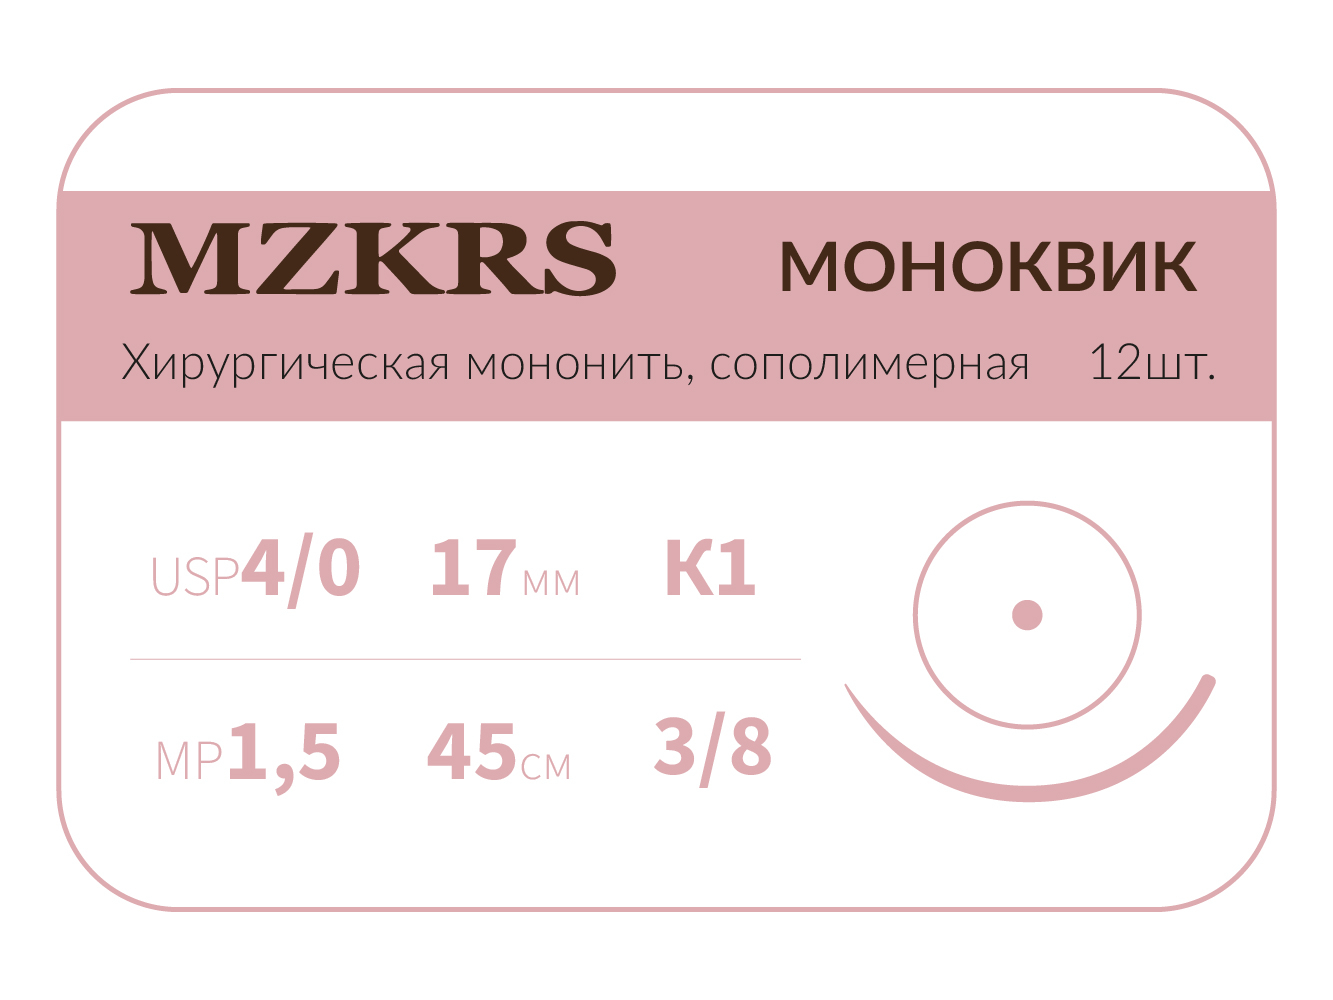 1738К1 Premium-4/0 (1,5)45 МОНК МОНОКВИК хирургическая мононить, сополимерная, MZKRS (Россия)